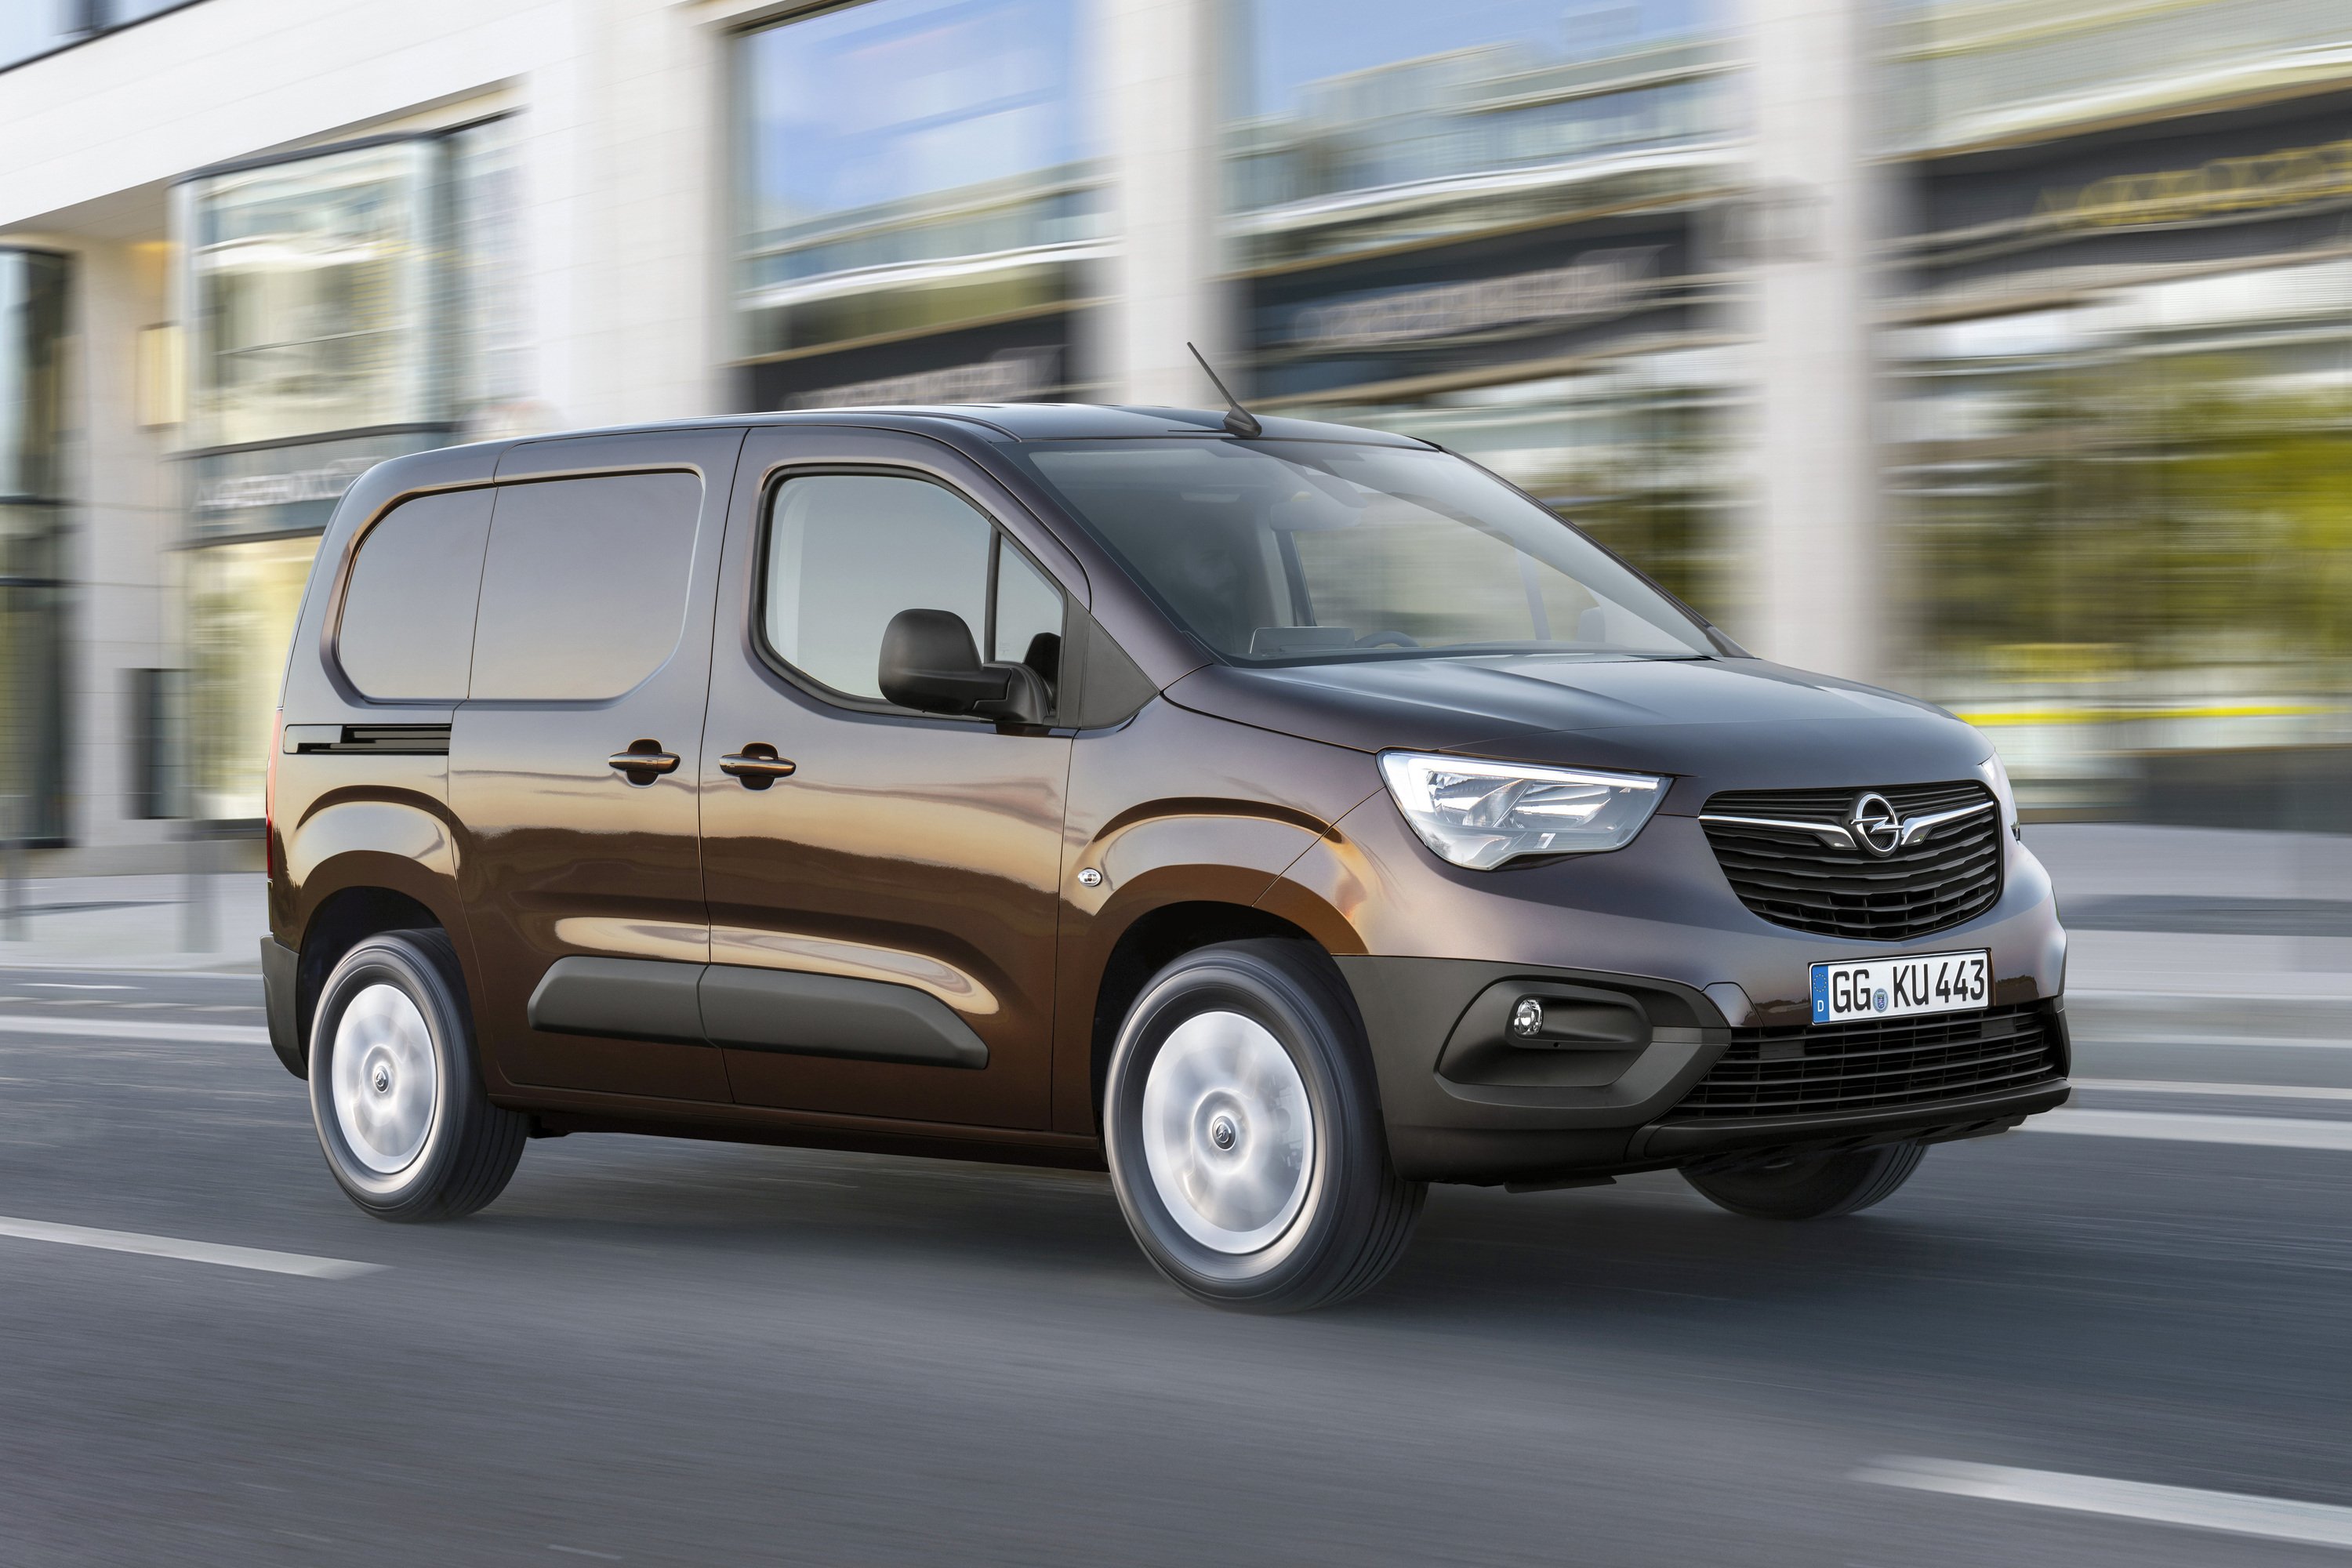 Opel Combo Van: praticit&agrave; di un furgone, comfort di un&rsquo;auto